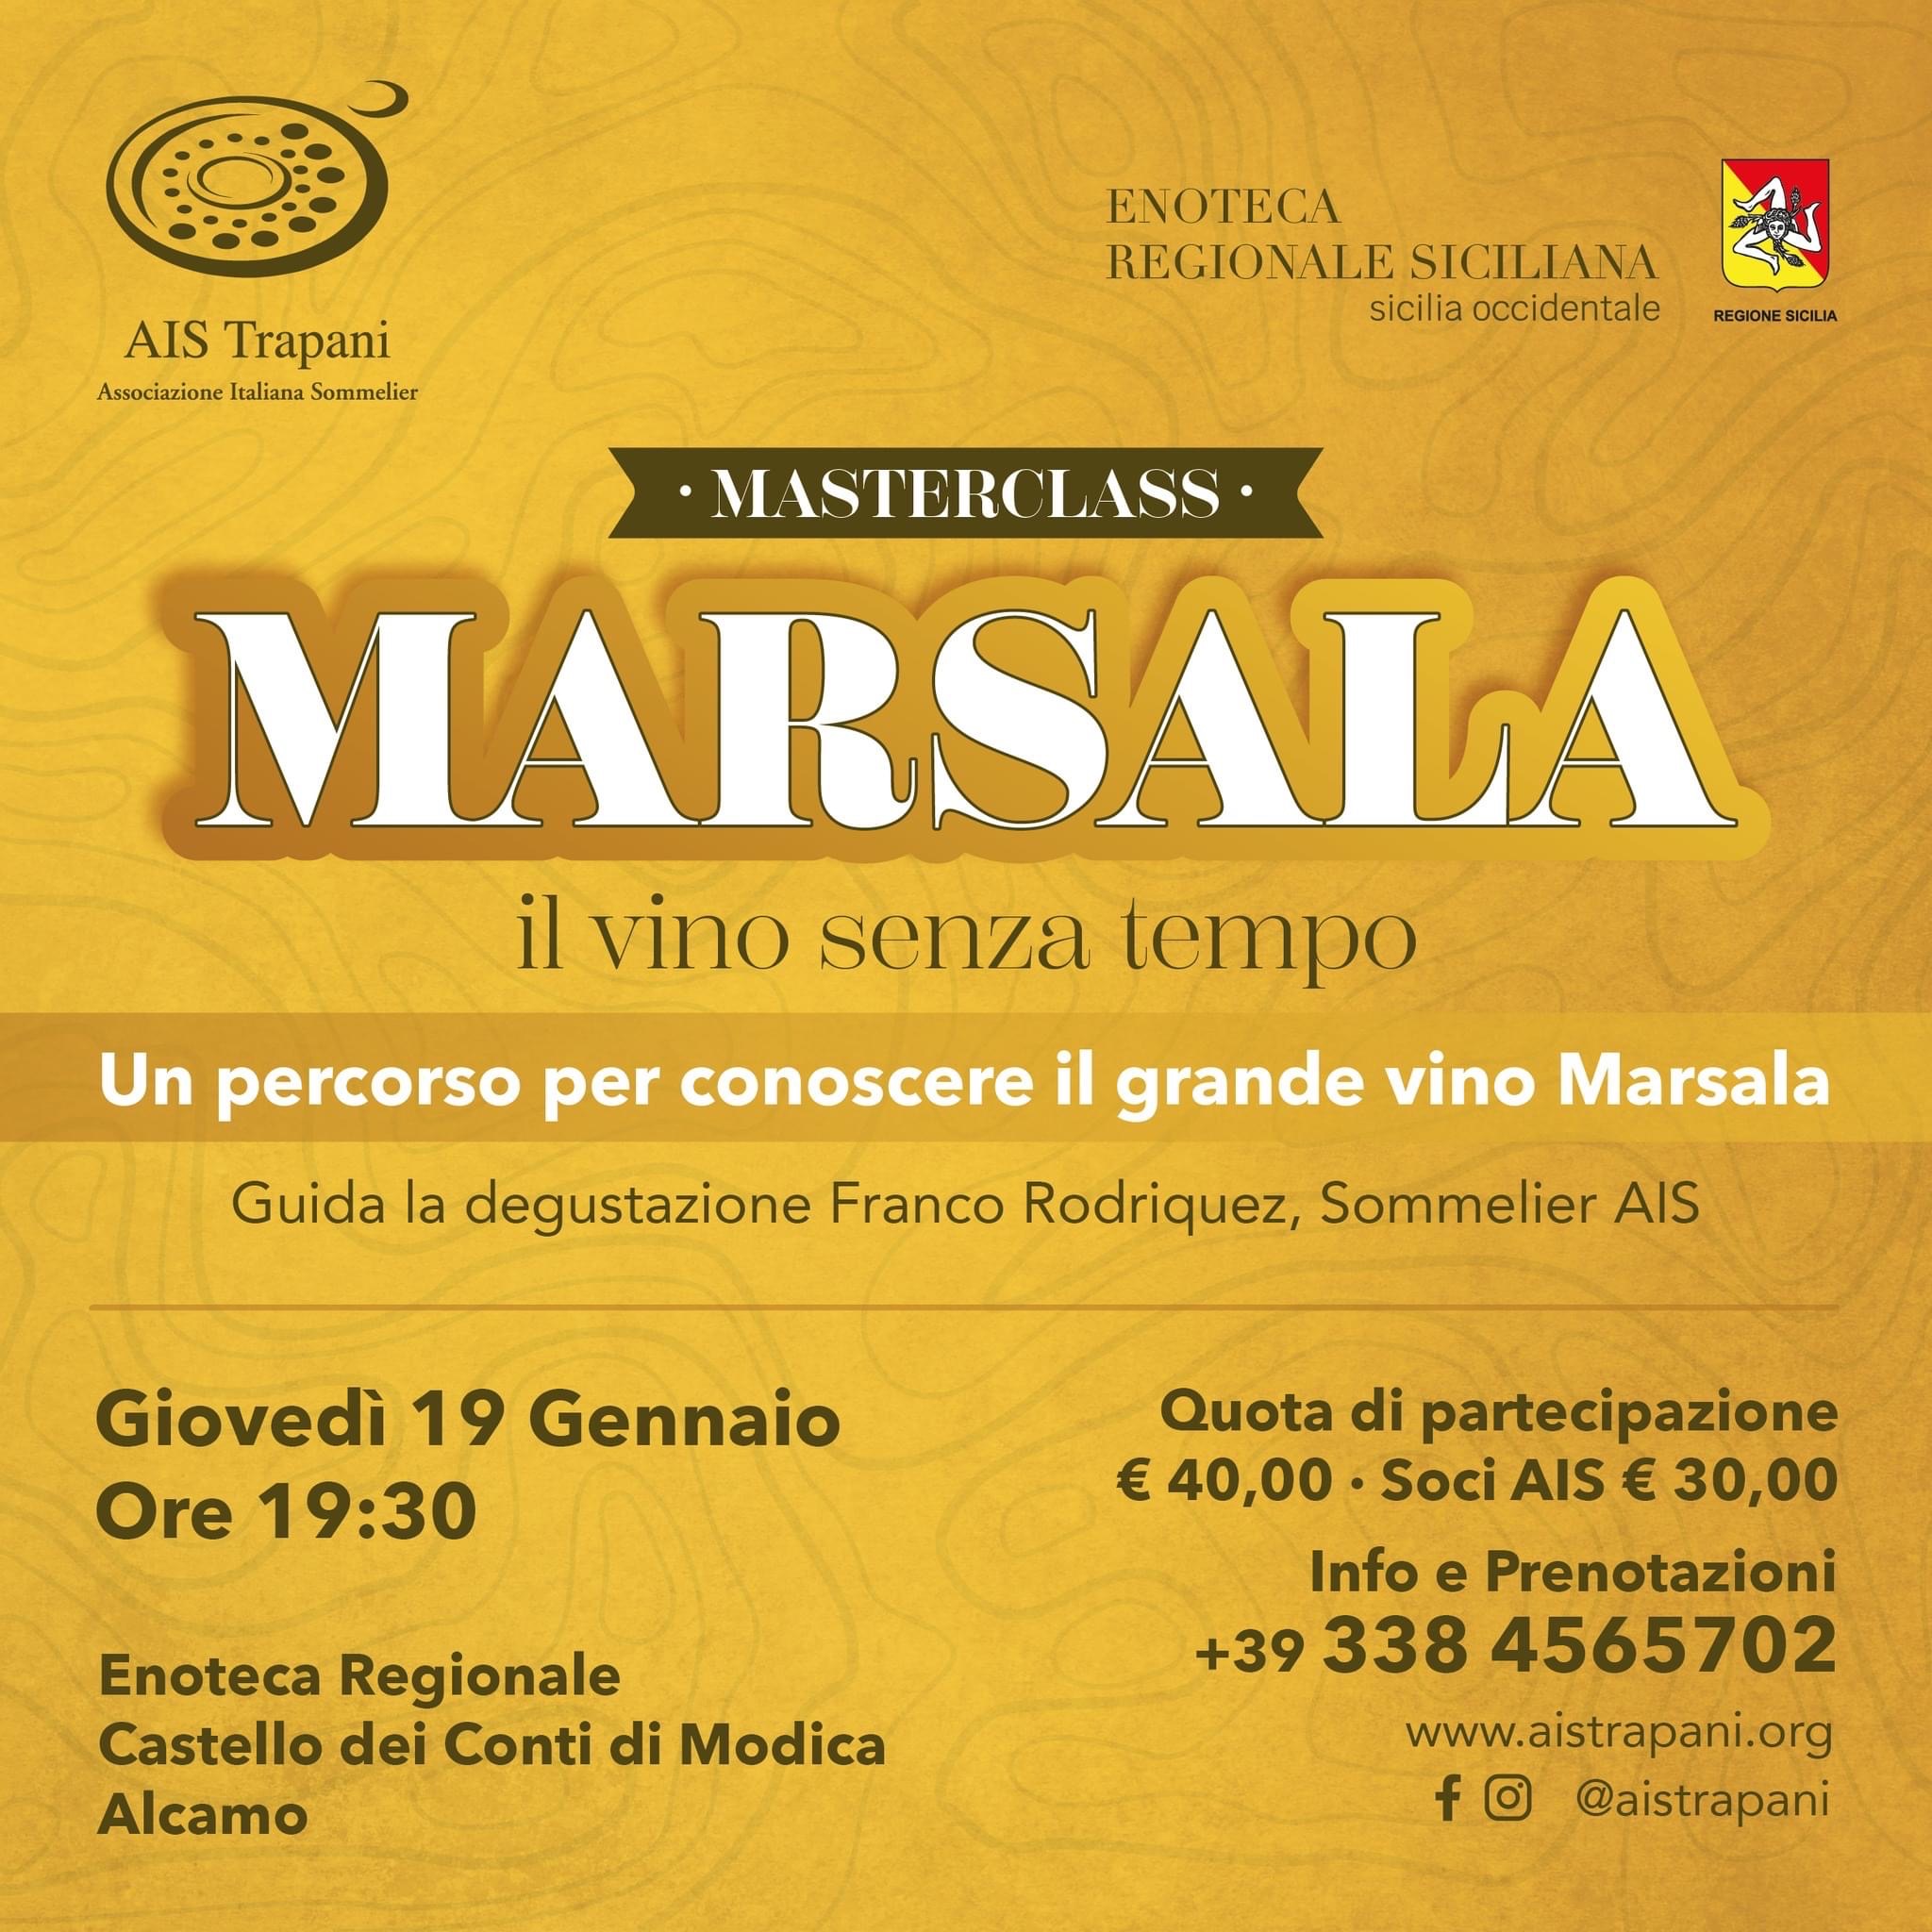 Marsala, il vino senza tempo